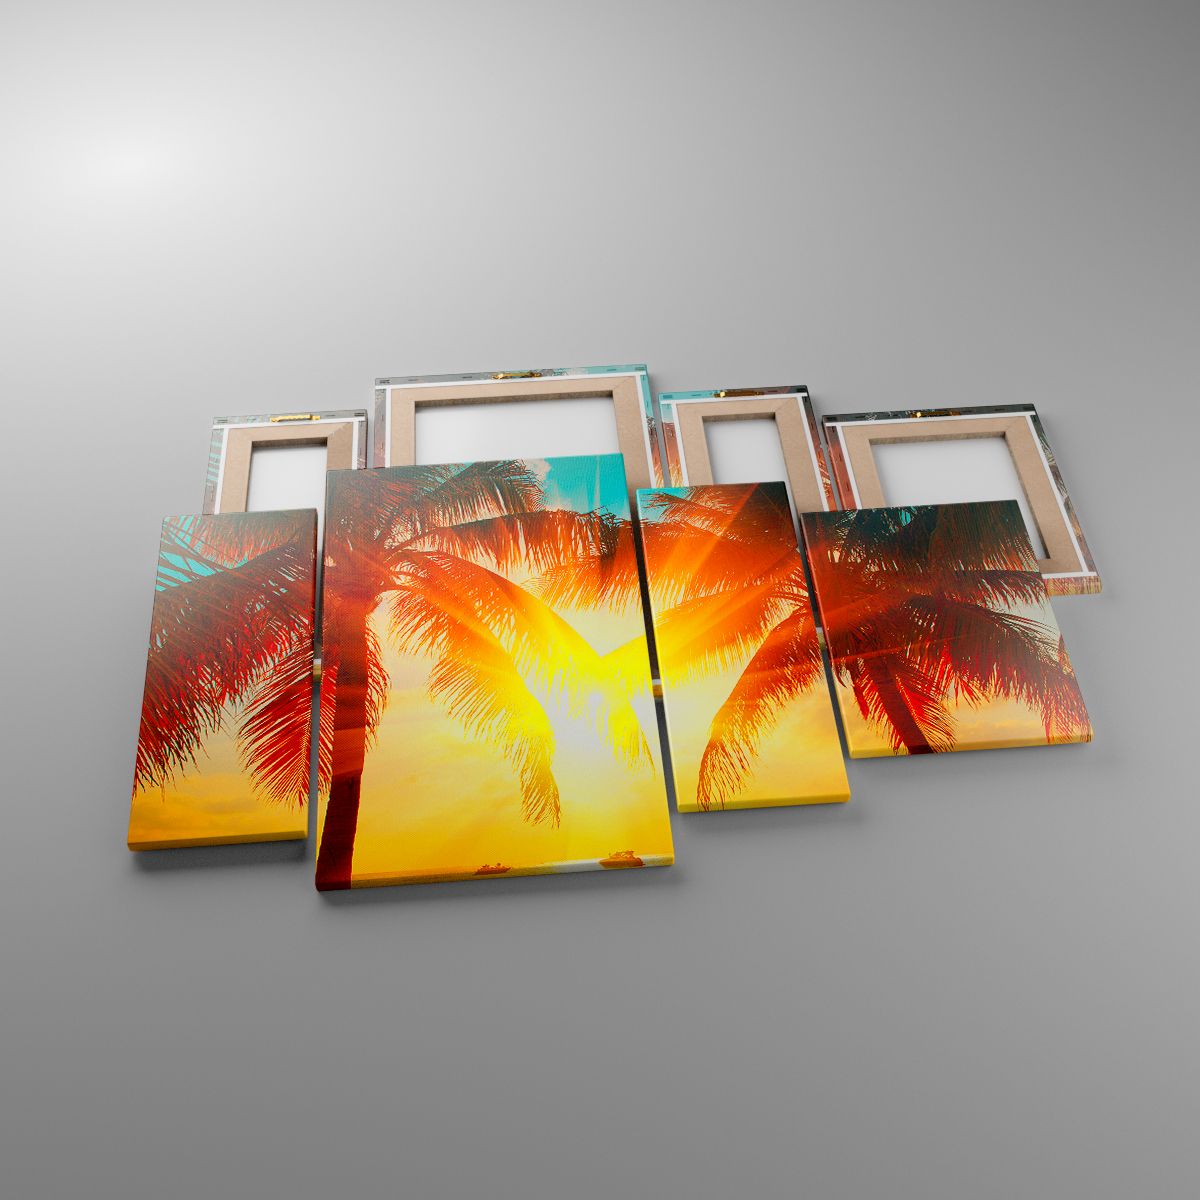 Leinwandbild Landschaft, Leinwandbild Kokusnuss-Palme, Leinwandbild Strand, Leinwandbild Meer, Leinwandbild Der Sonnenuntergang